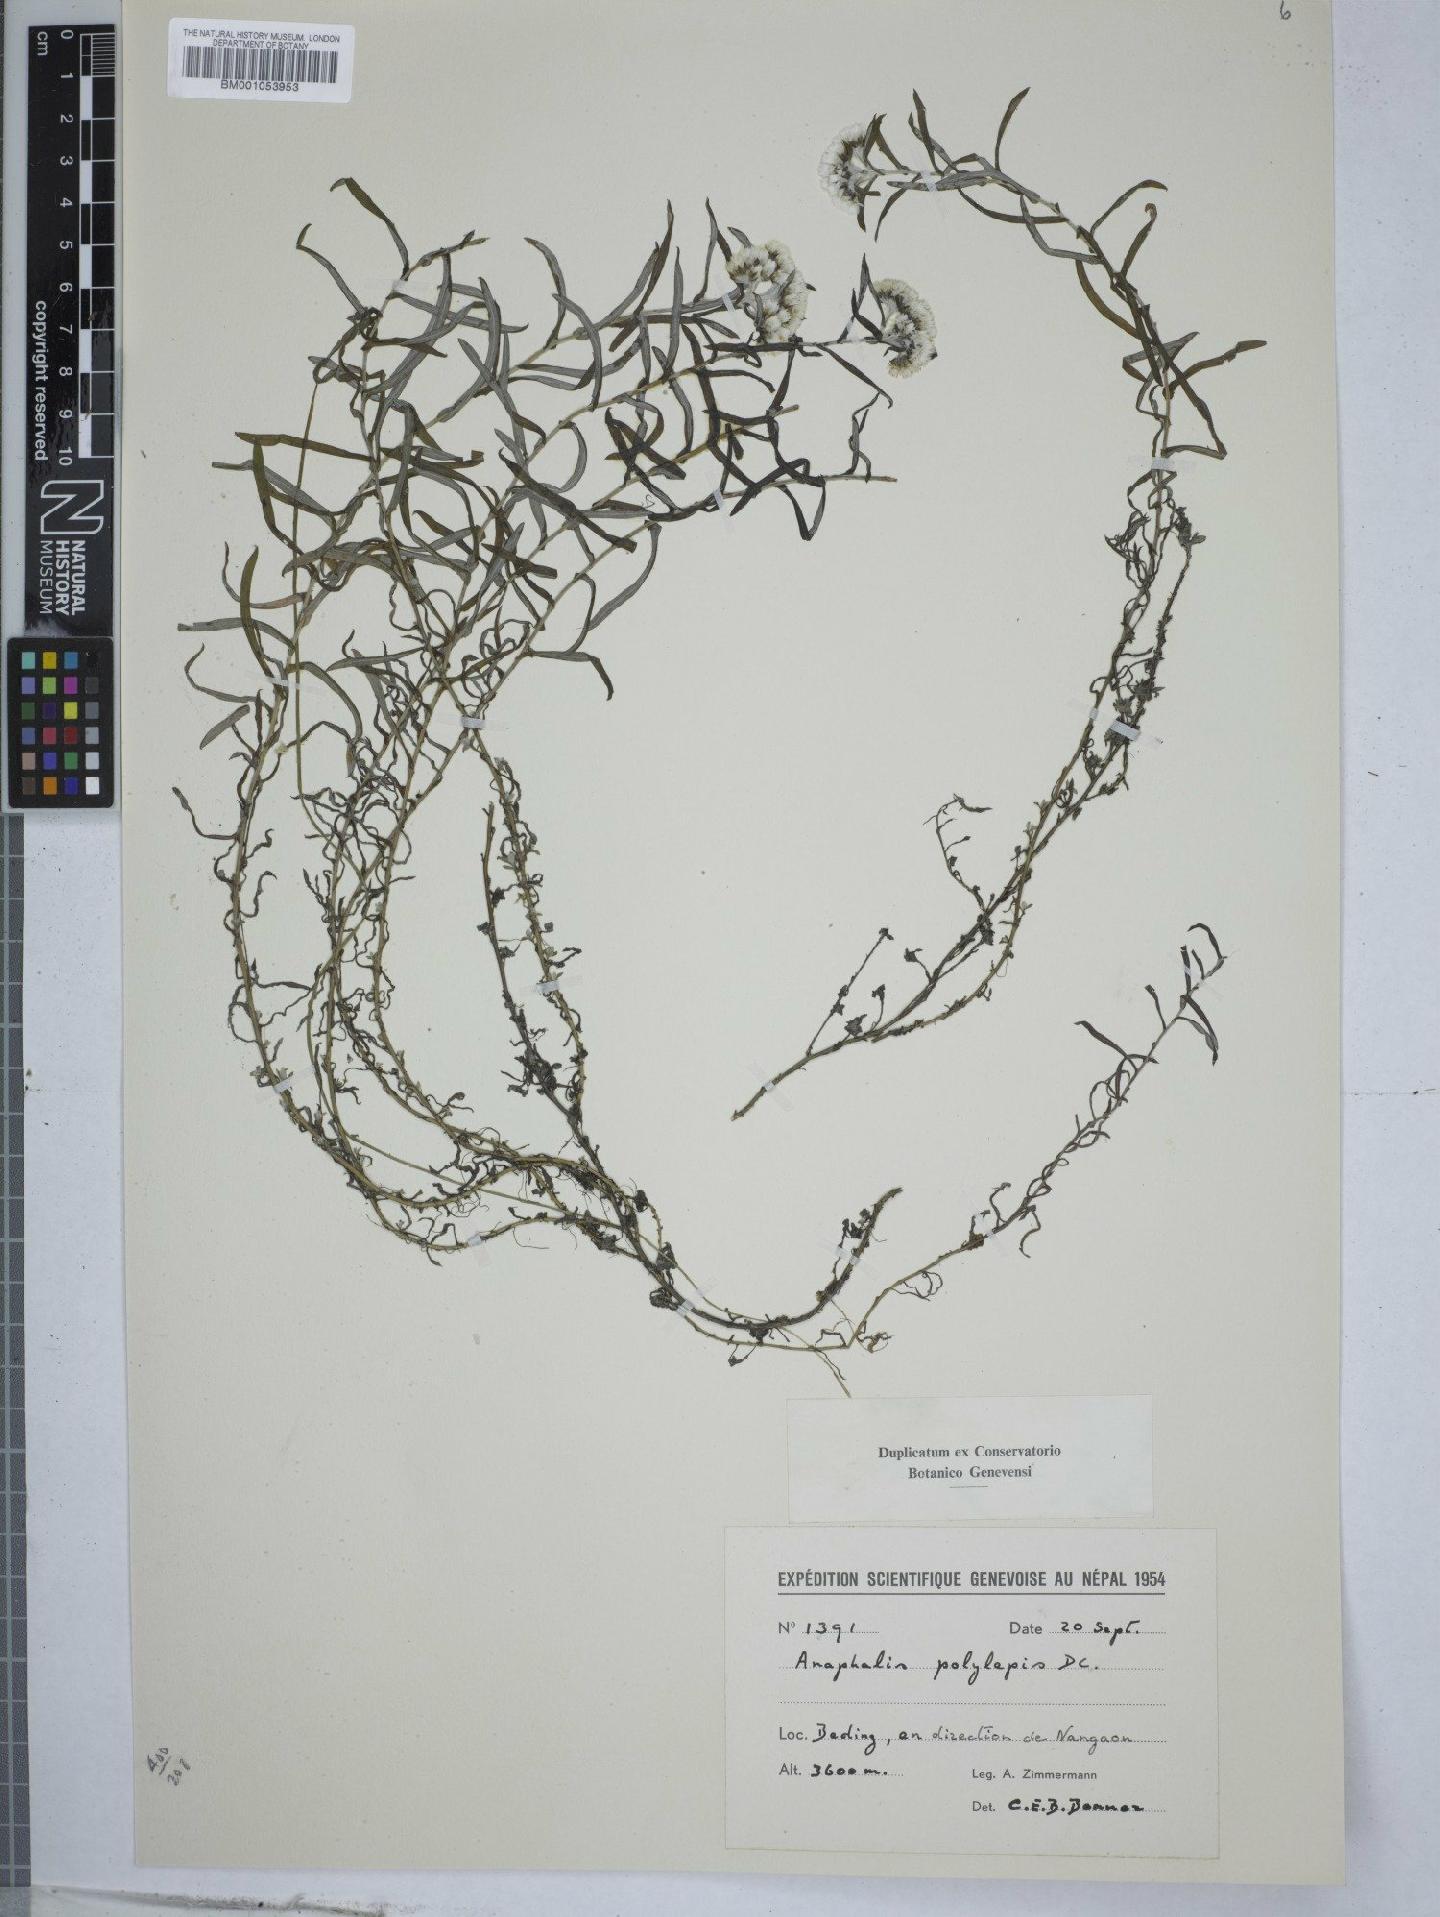 To NHMUK collection (Anaphalis polylepis DC.; NHMUK:ecatalogue:2968609)